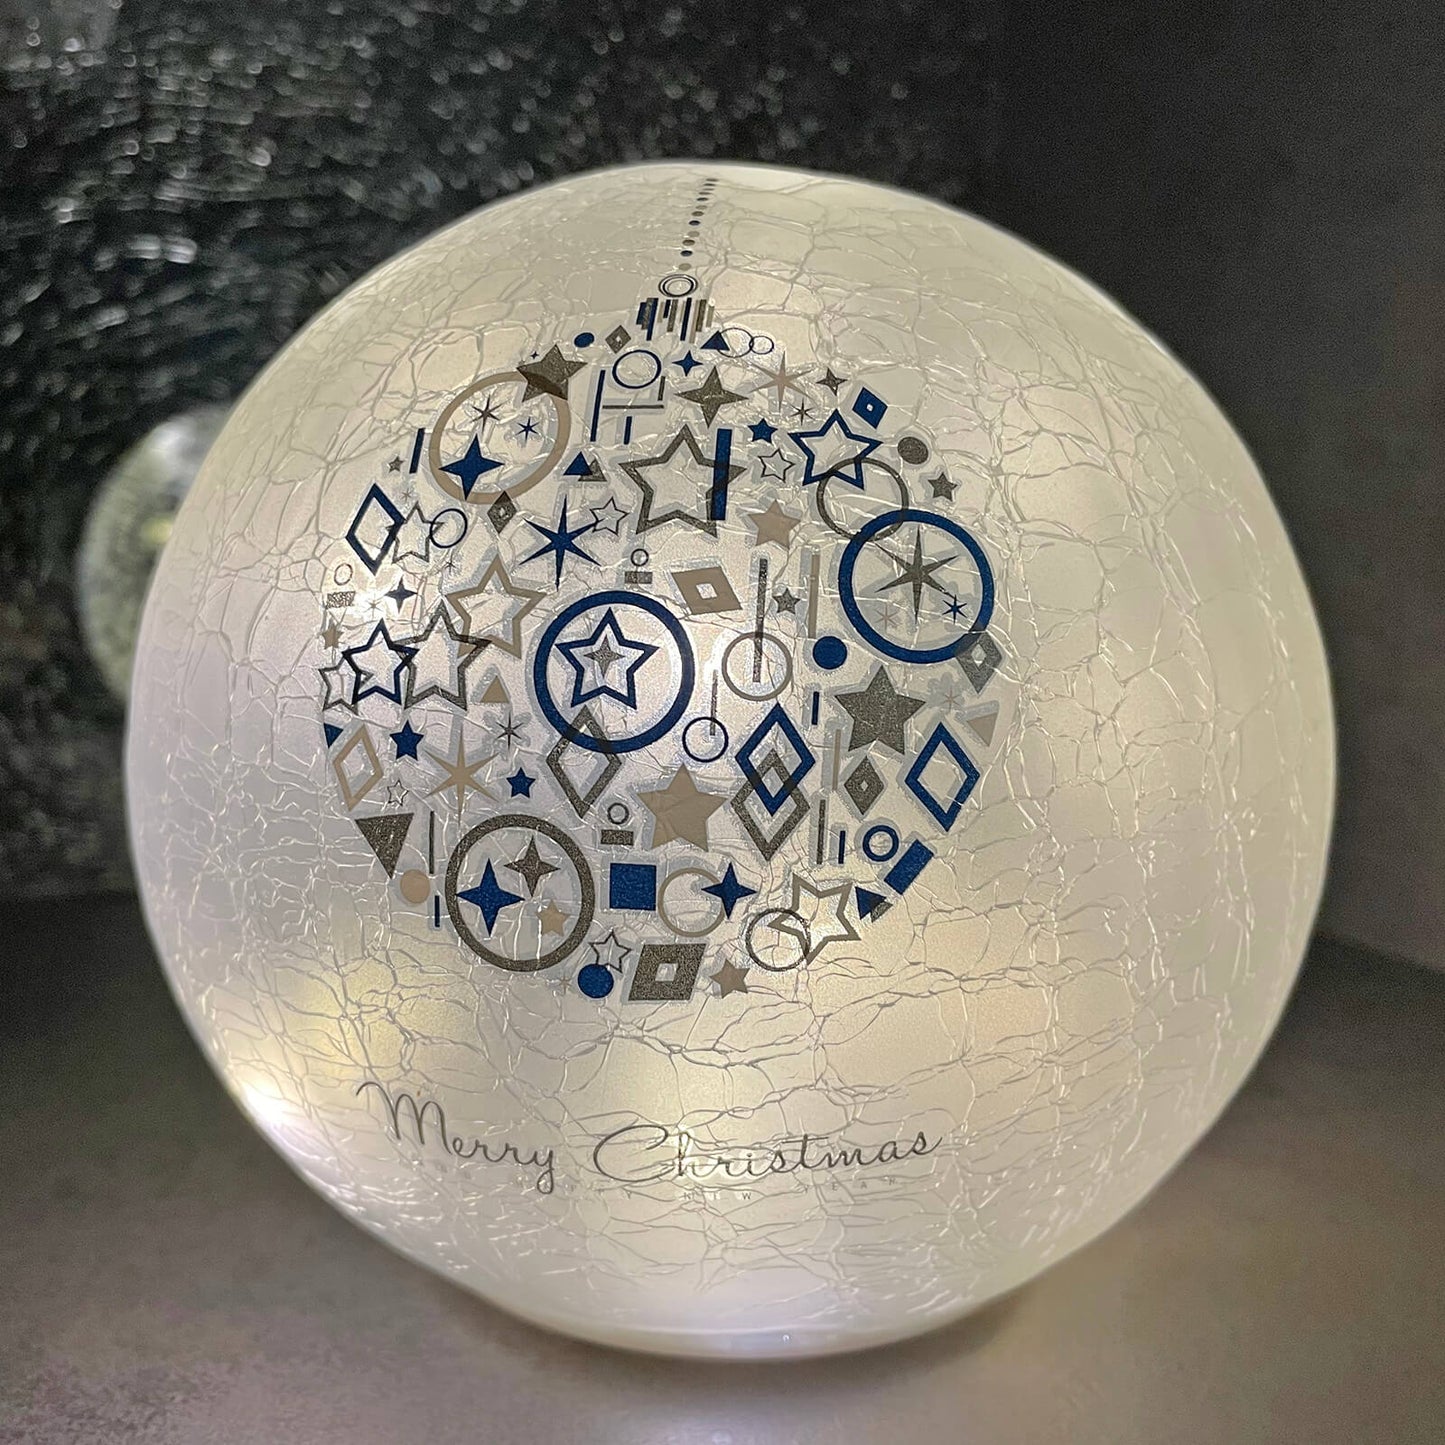 Mr Crimbo Light Up Christmas Crackle Ball Decoration LED 15cm - MrCrimbo.co.uk -XS7310 - Blue Bauble -ball